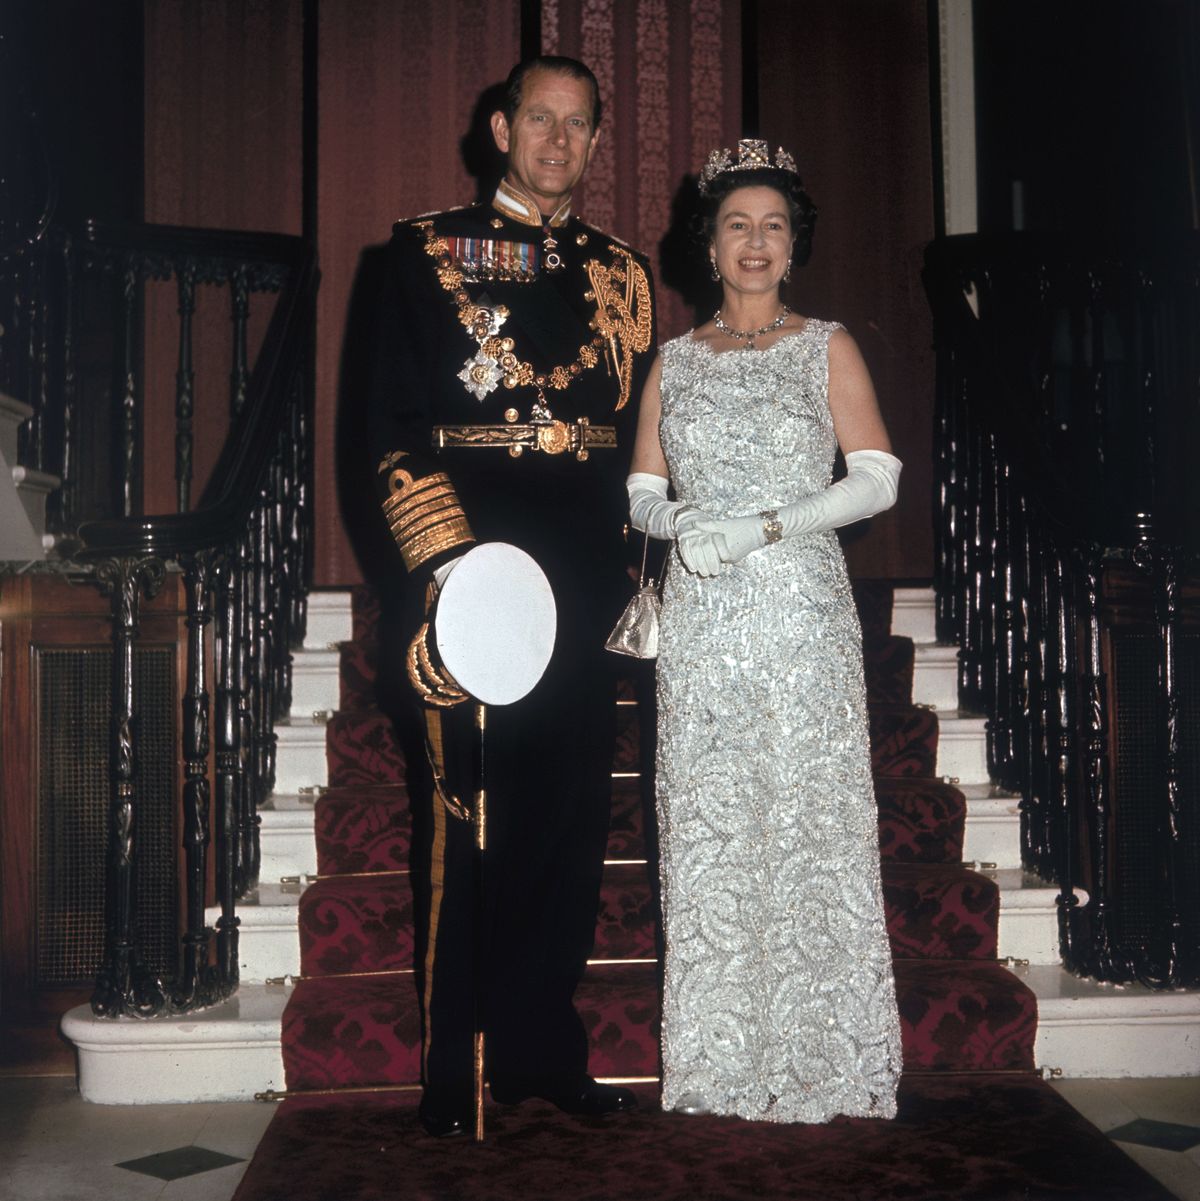 kraljica elizabeth ii in princ philip vojvoda edinburški ob praznovanju 25. obletnice srebrne poroke, ki je potekala v Buckinghamski palači, 20. november 1972 photo by hulton archivegetty images